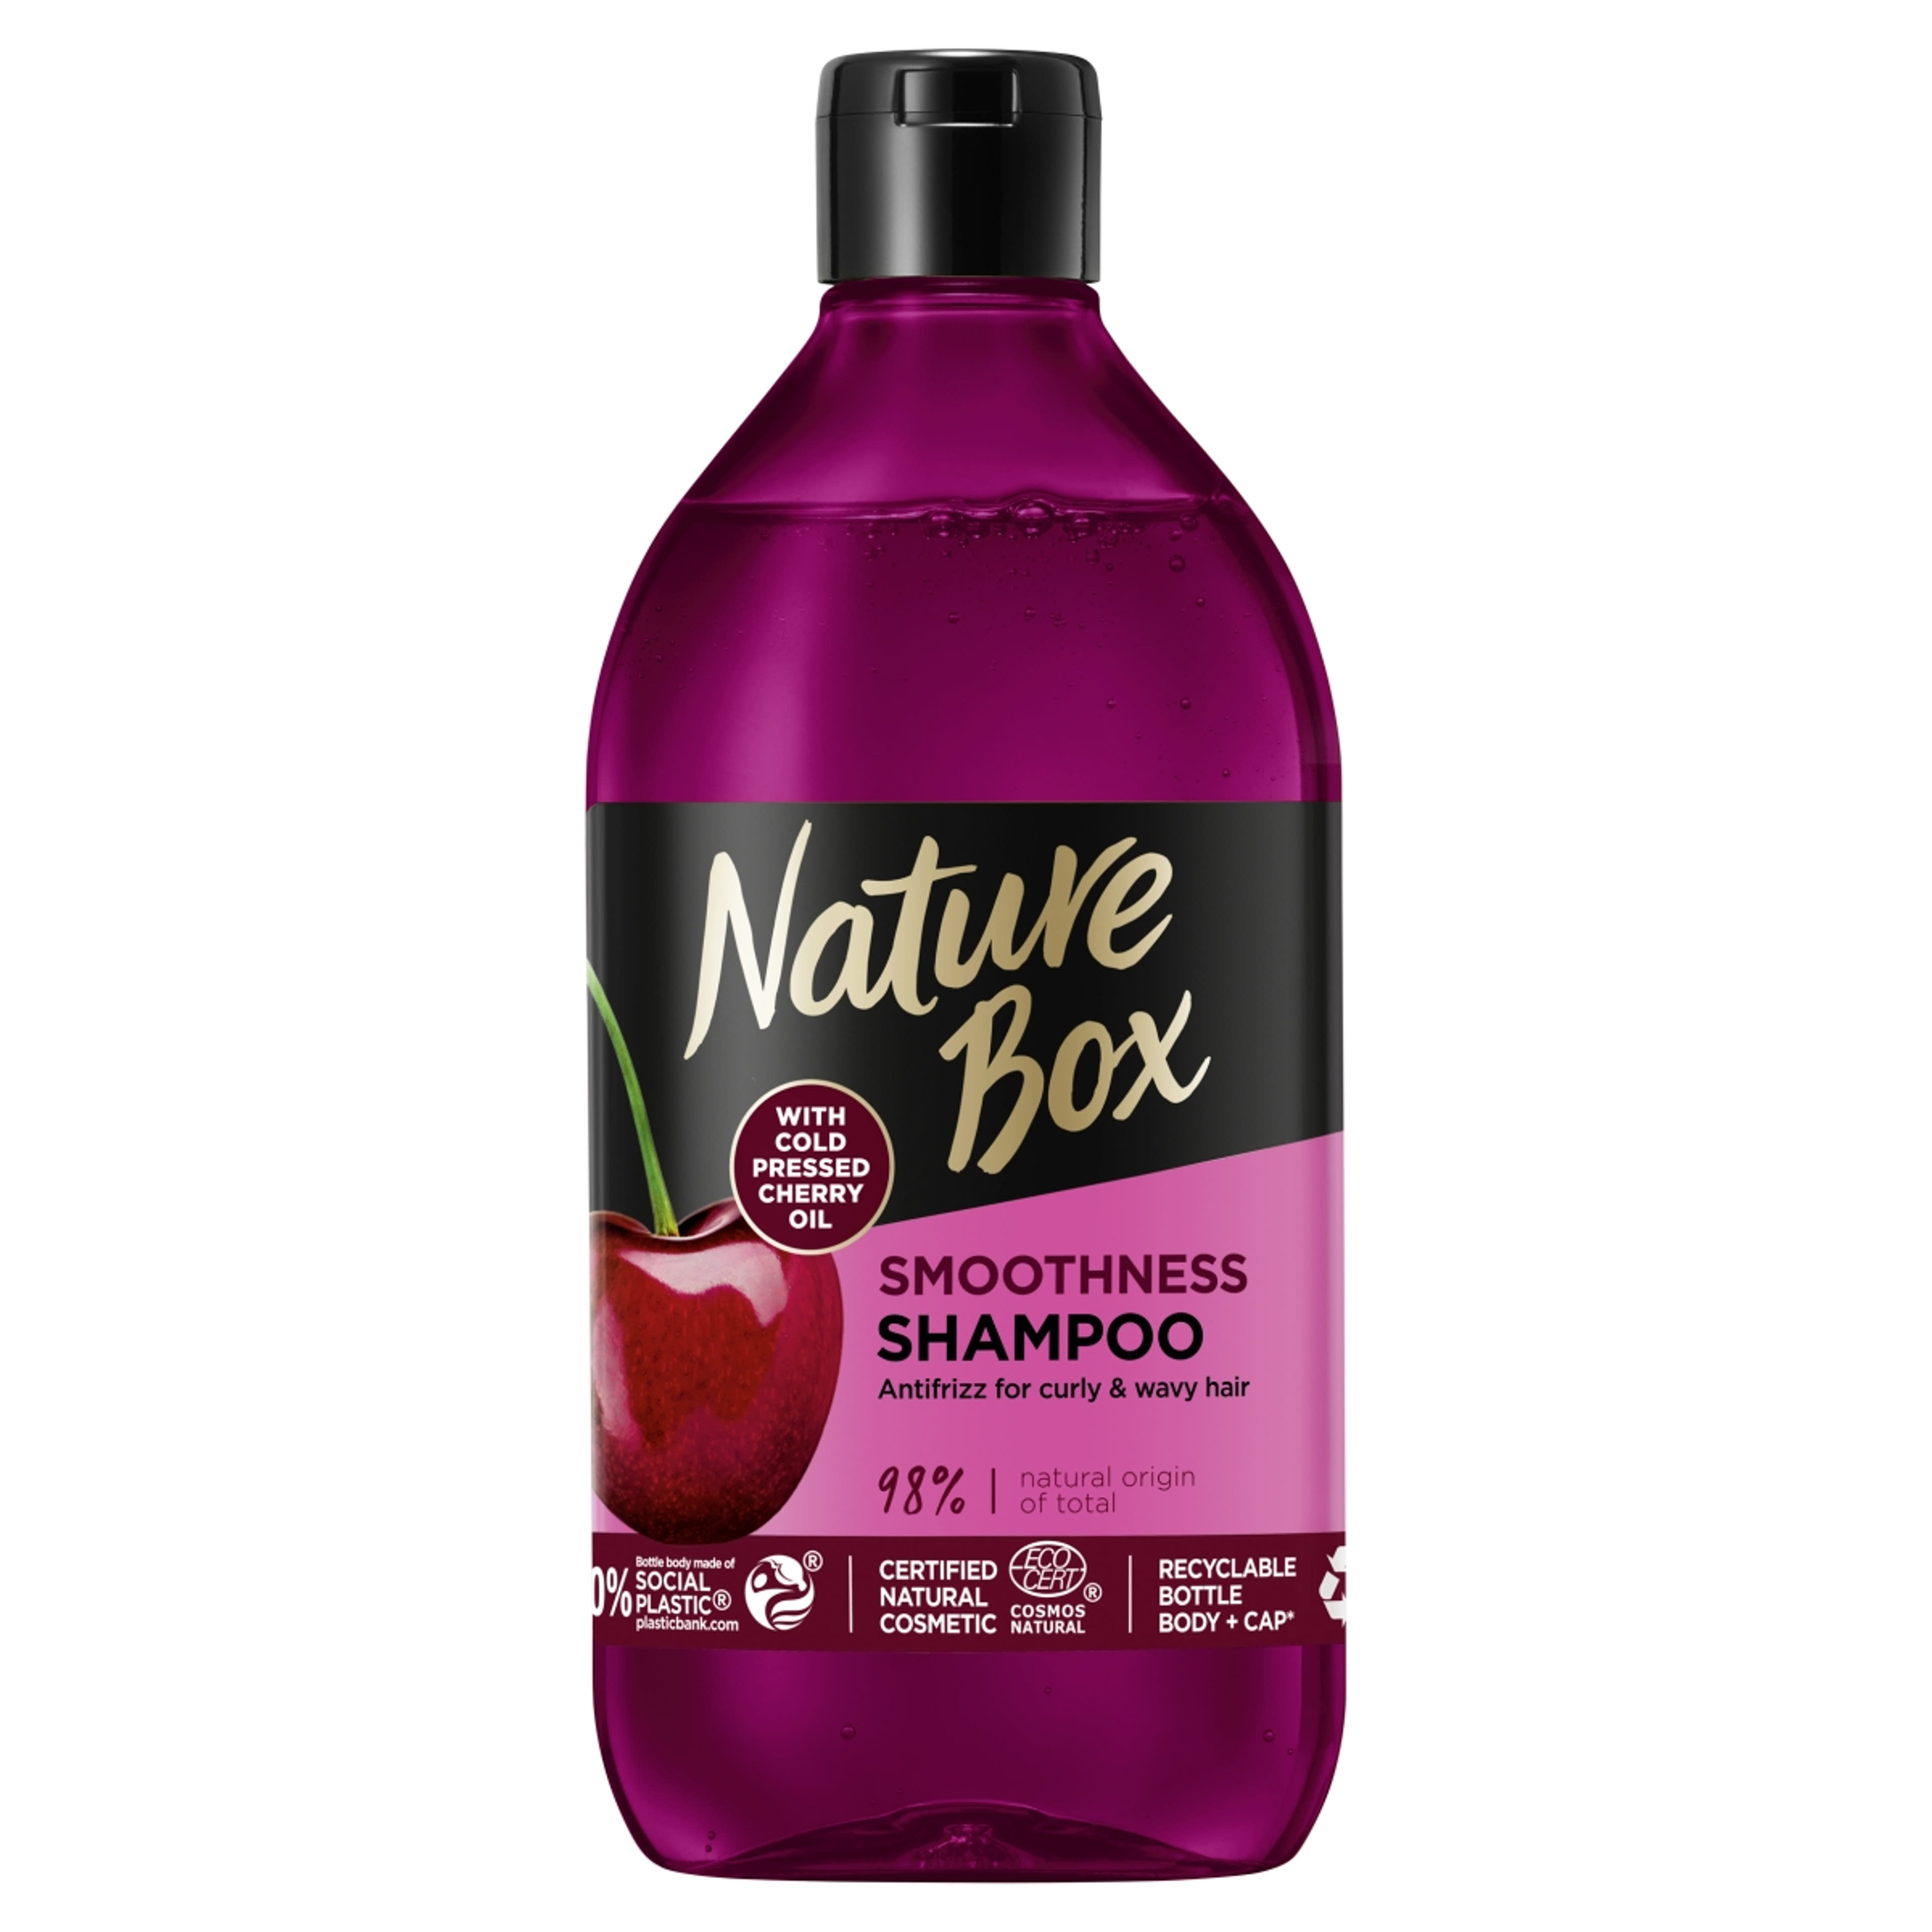 Nature Box sampon a puha hajért hidegen préselt cseresznye olajjal - 385 ml-1